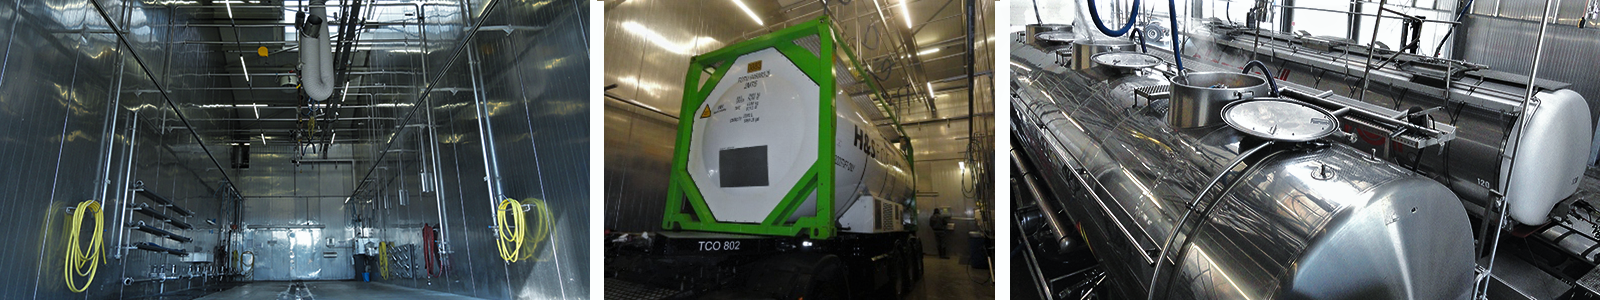 Truckcleaning Venlo utilise des jets de liquide JP électriques pour nettoyer les réservoirs des camions.